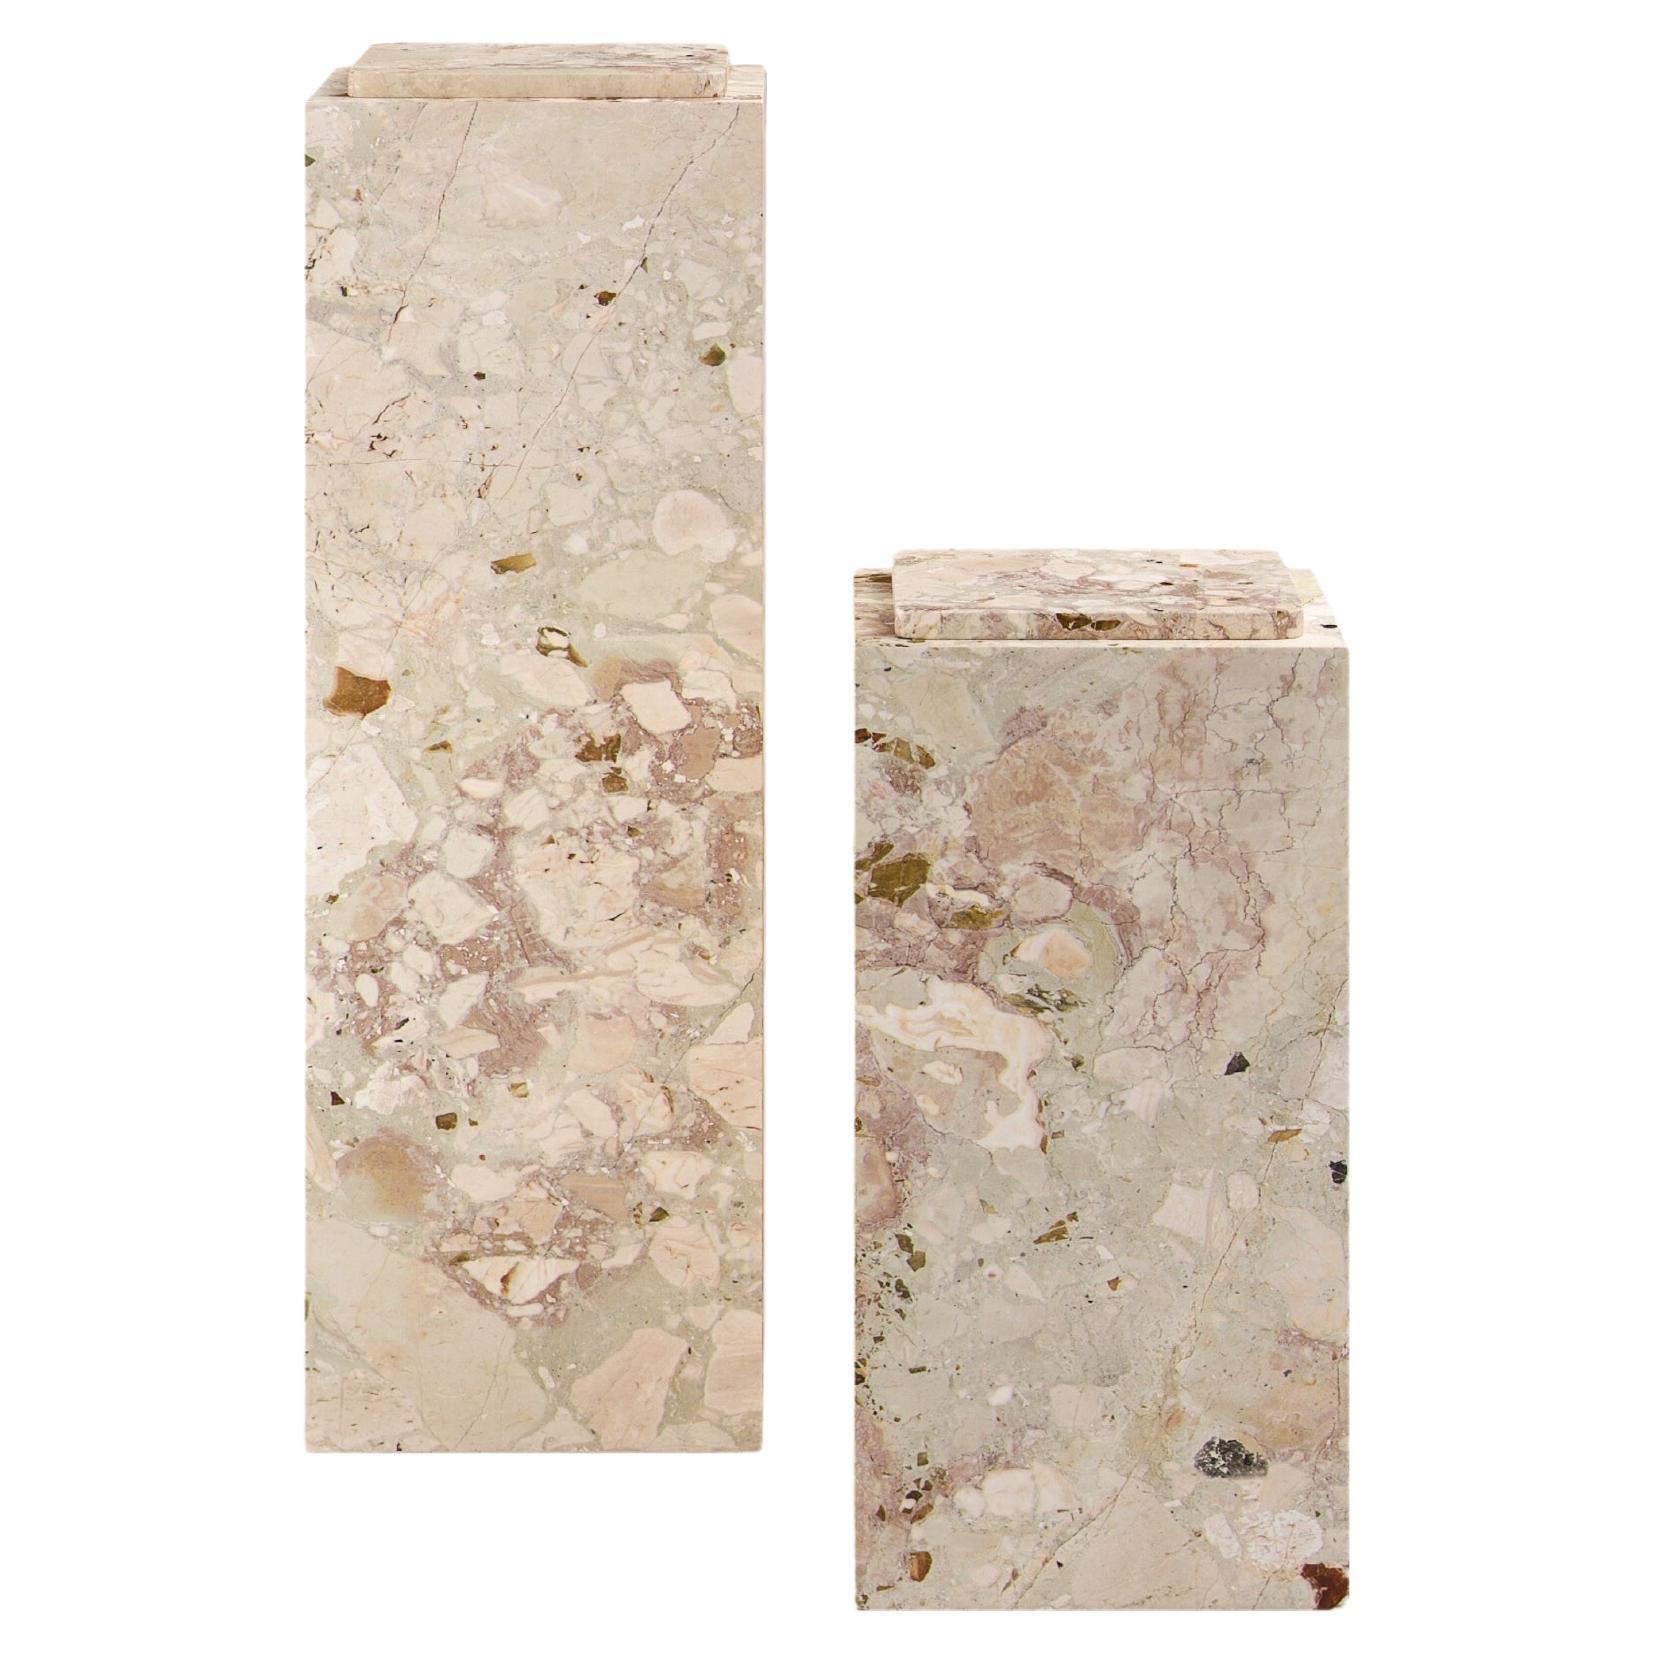 FORM(LA) Cubo Pedestal 12”L x 12"W x 24”H Breccia Rosa Marble For Sale